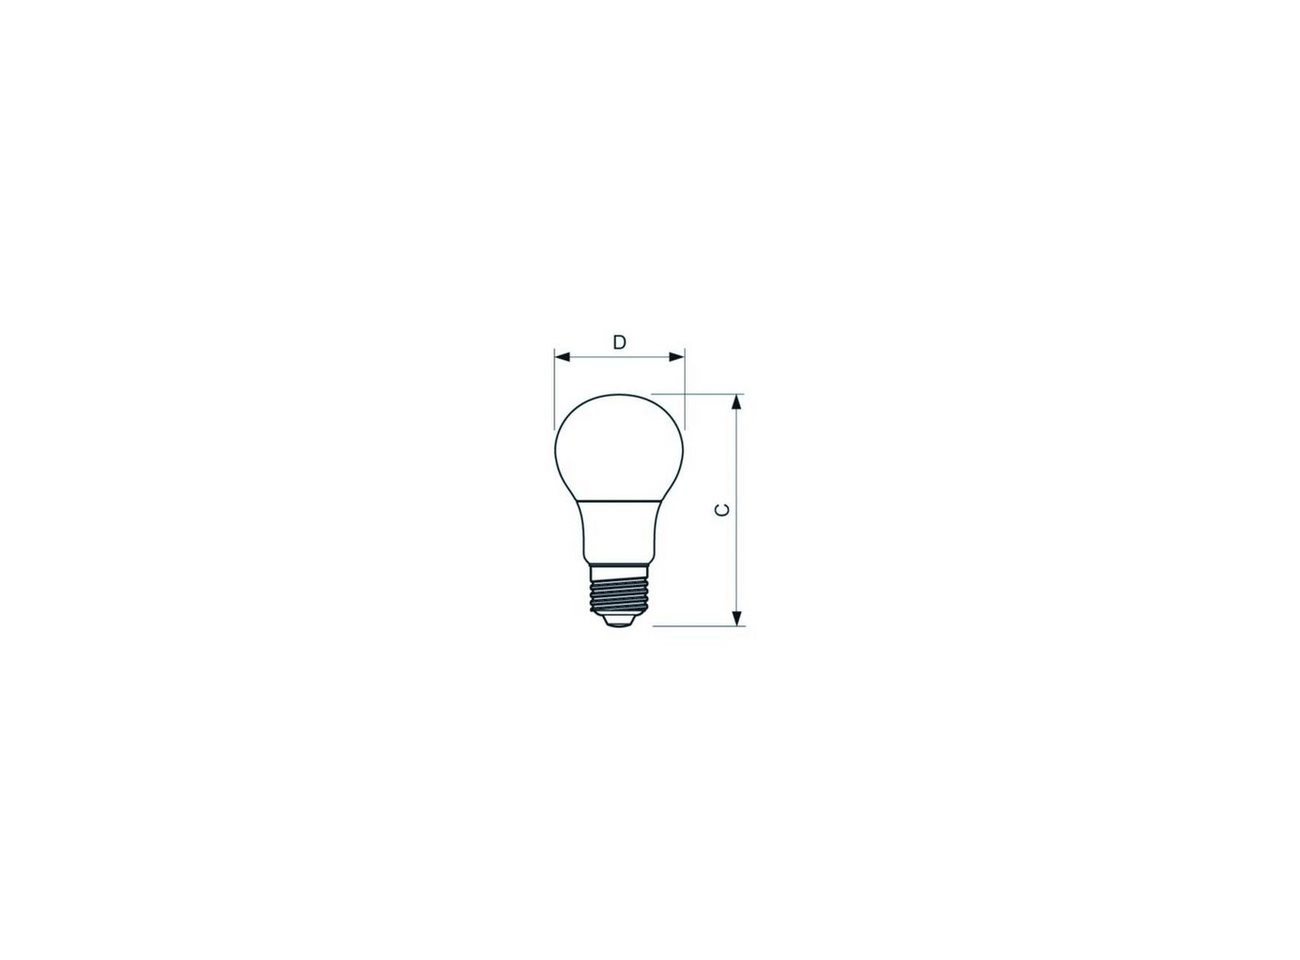 CorePro LEDbulb ND 7,5-60W A60 E27 840, LED-Lampe